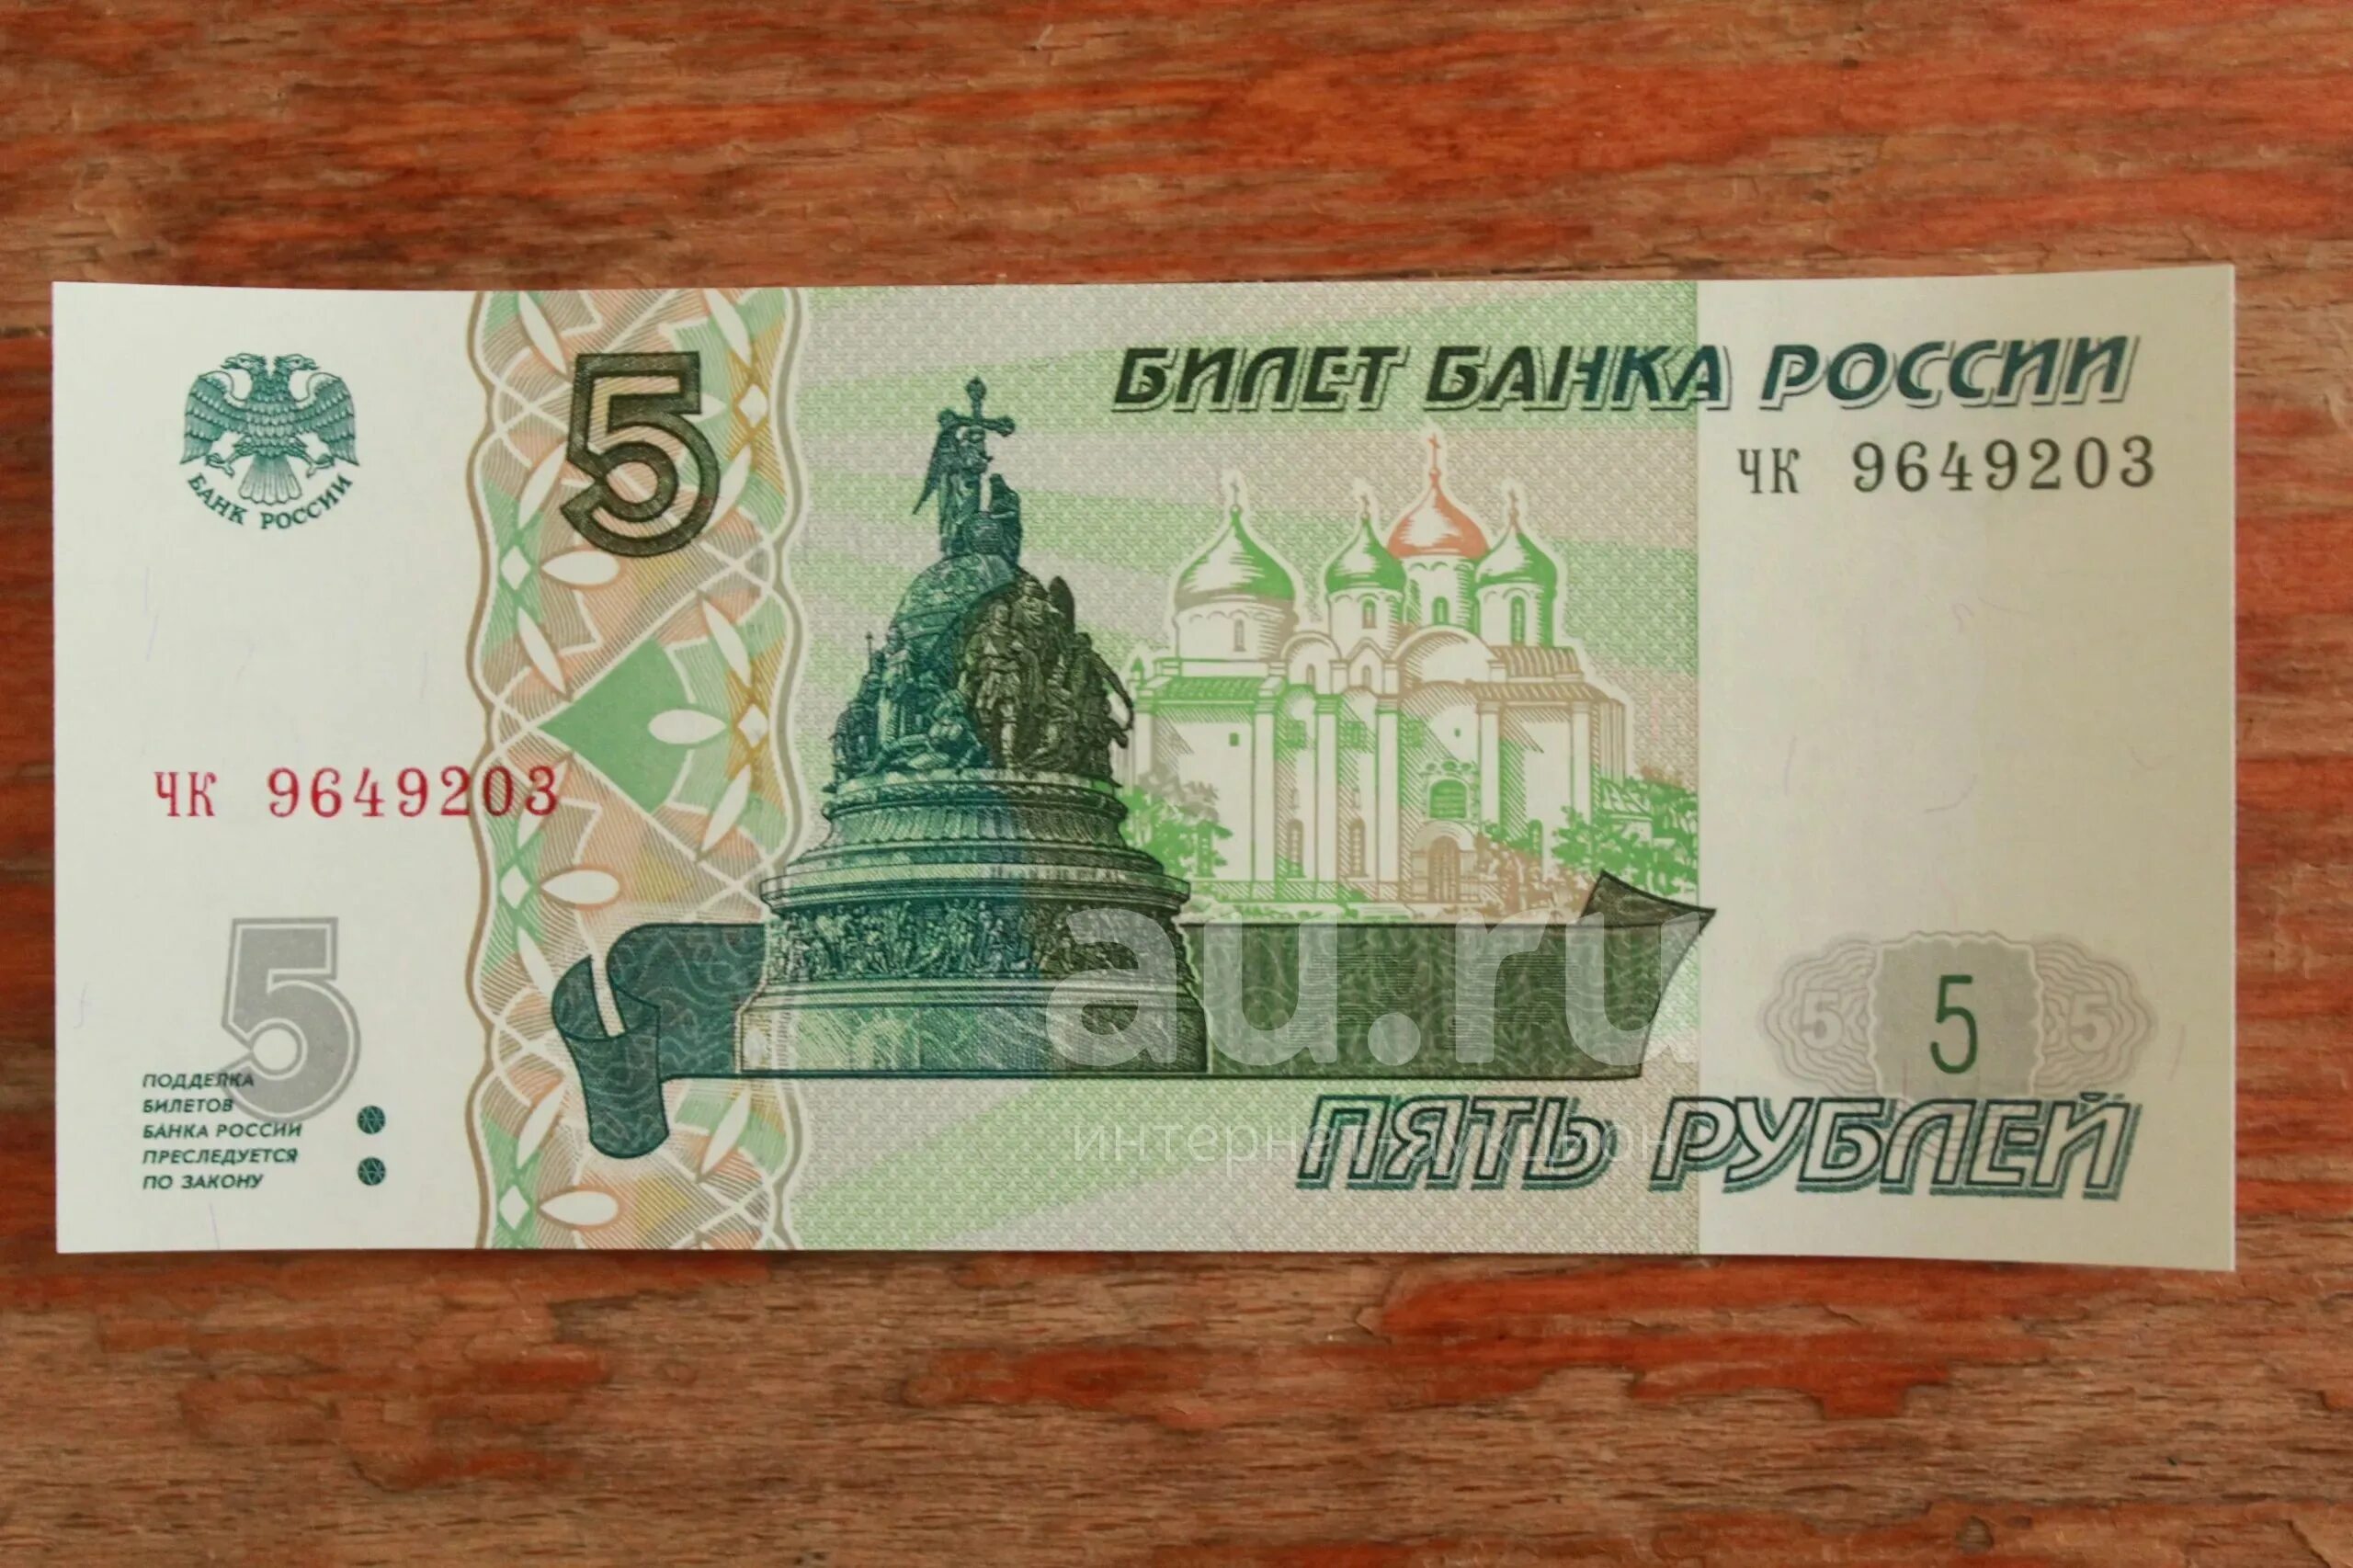 5 рублей в долларах. Купюра 5 рублей. Банкнота 5 рублей. Купюра 5 руб 1997 года. Купюра 5 рублей 1997.